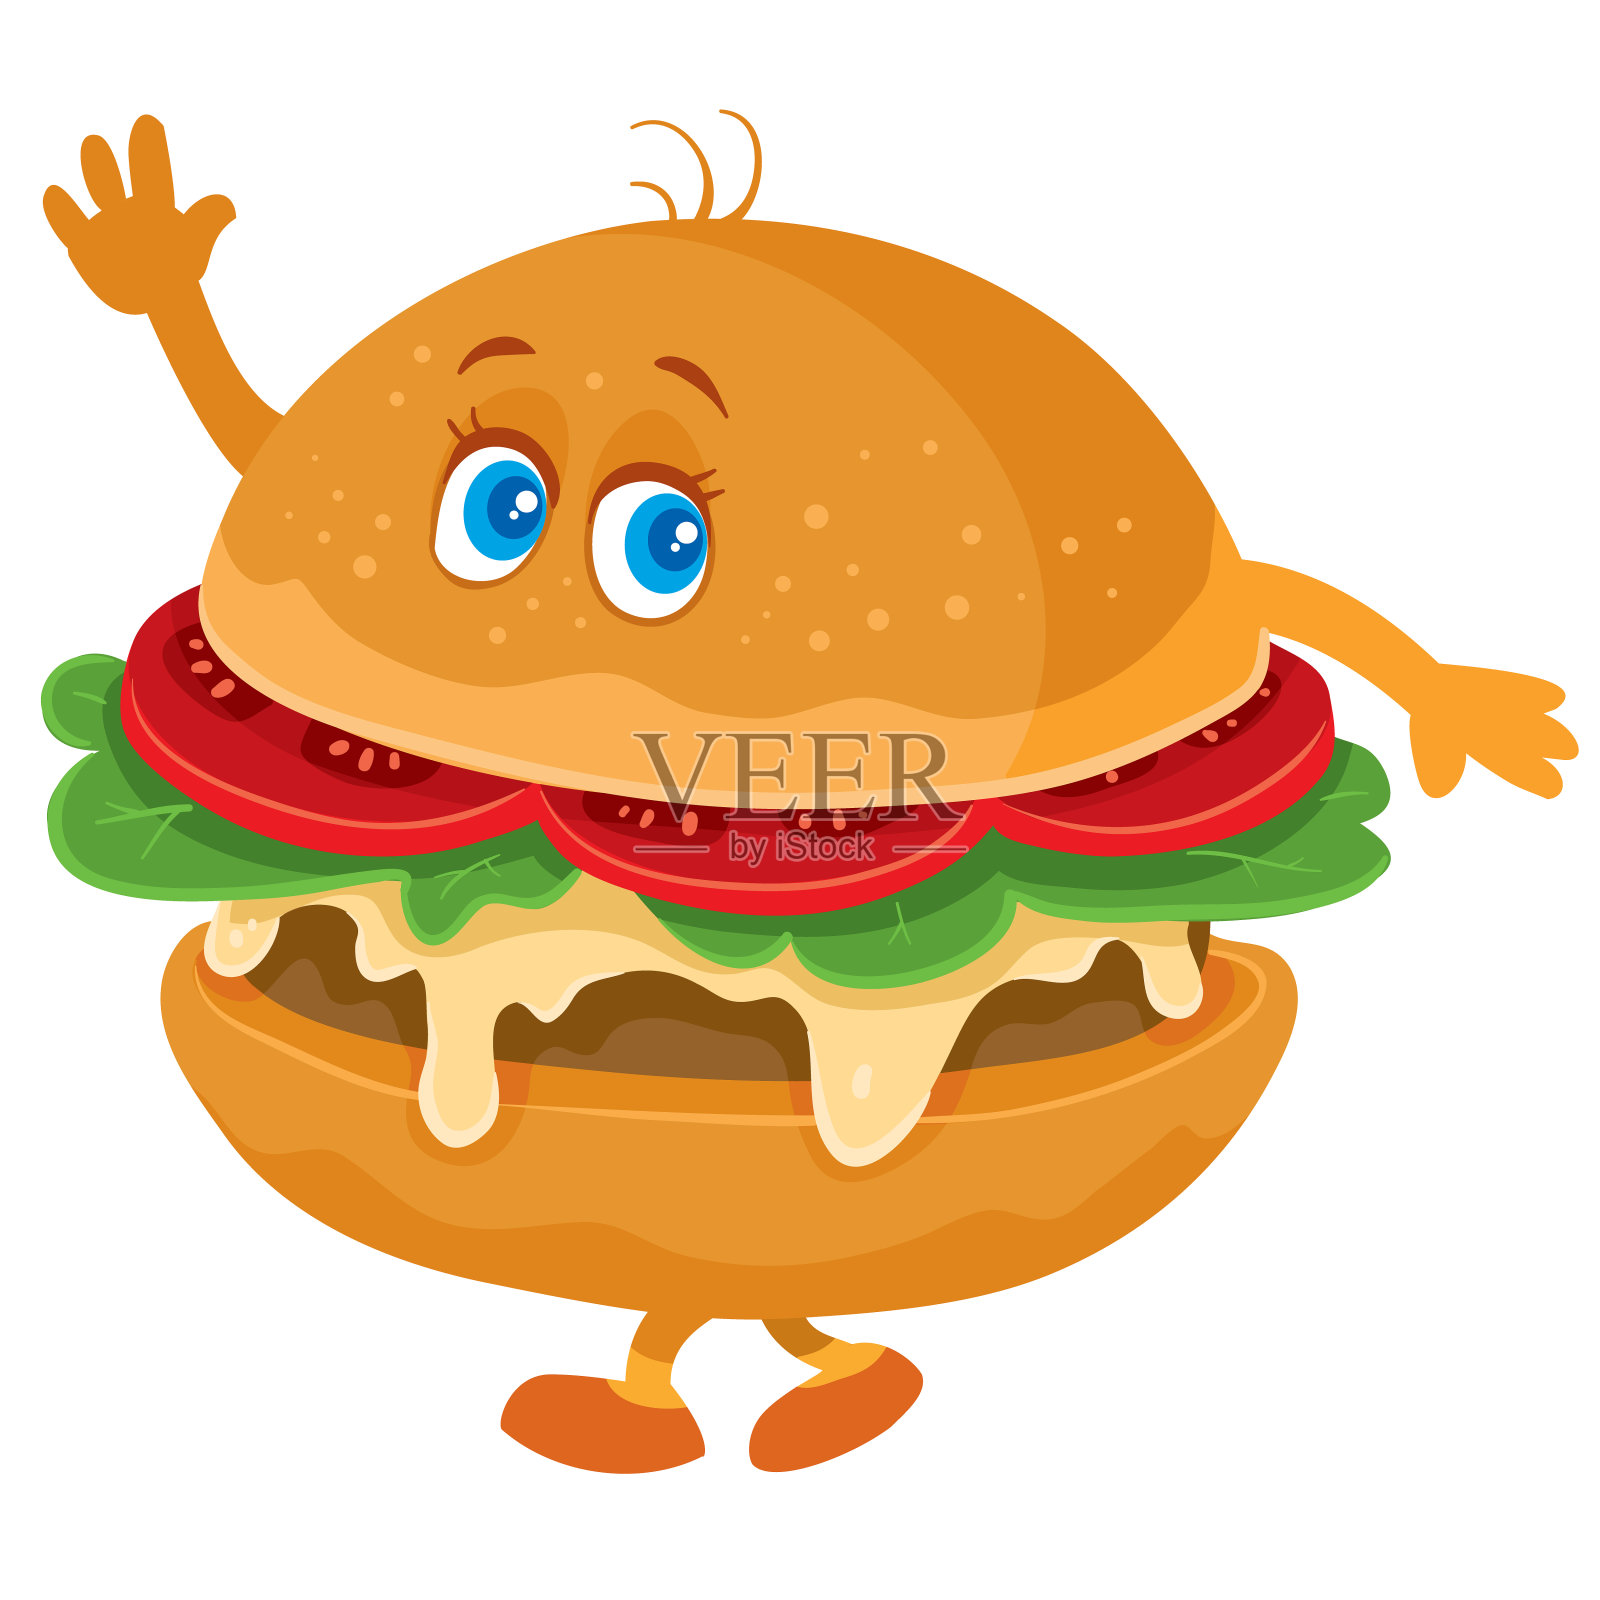 有趣的汉堡包角色，眼睛，手臂和腿摆动，孤立的物体在白色背景，设计元素图片